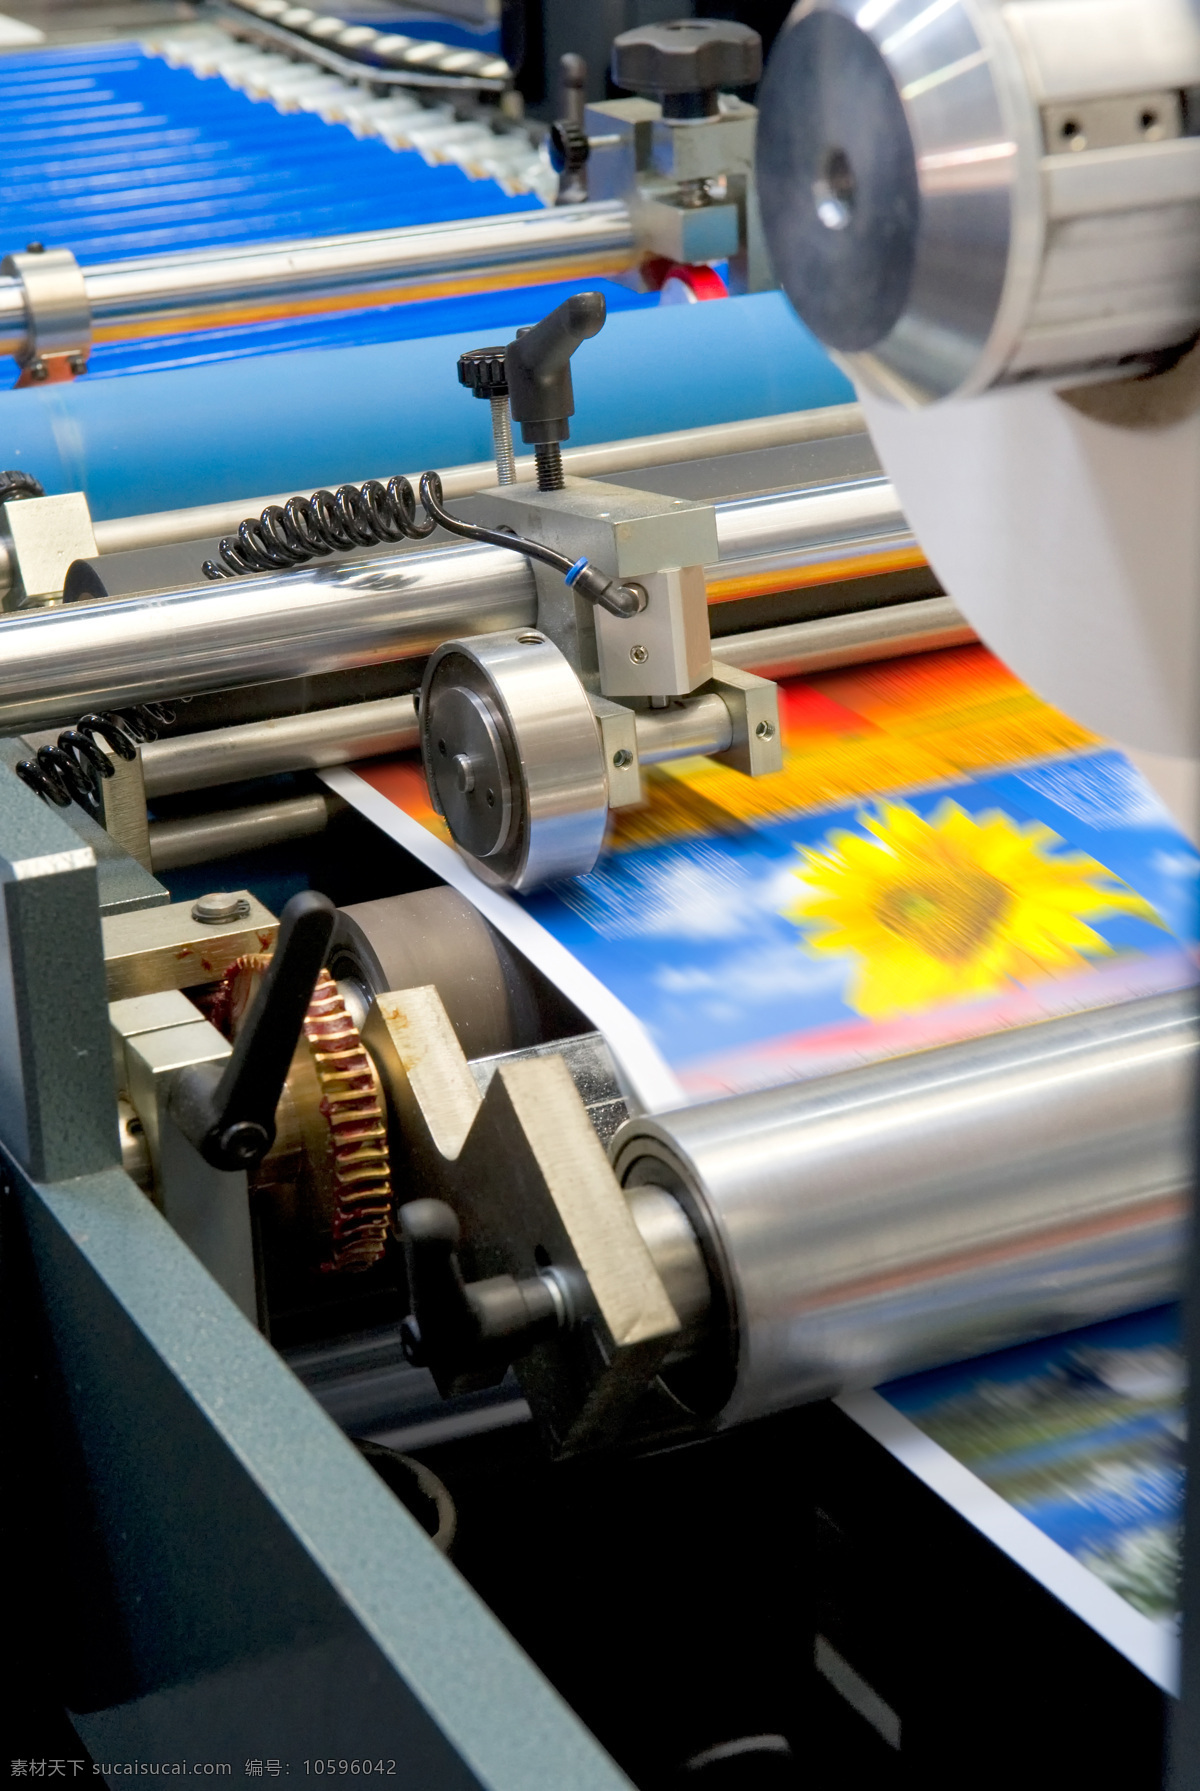 印刷机 印刷厂 印刷画册 印刷厂画册 设计画册 印前设备 生活百科 生活素材